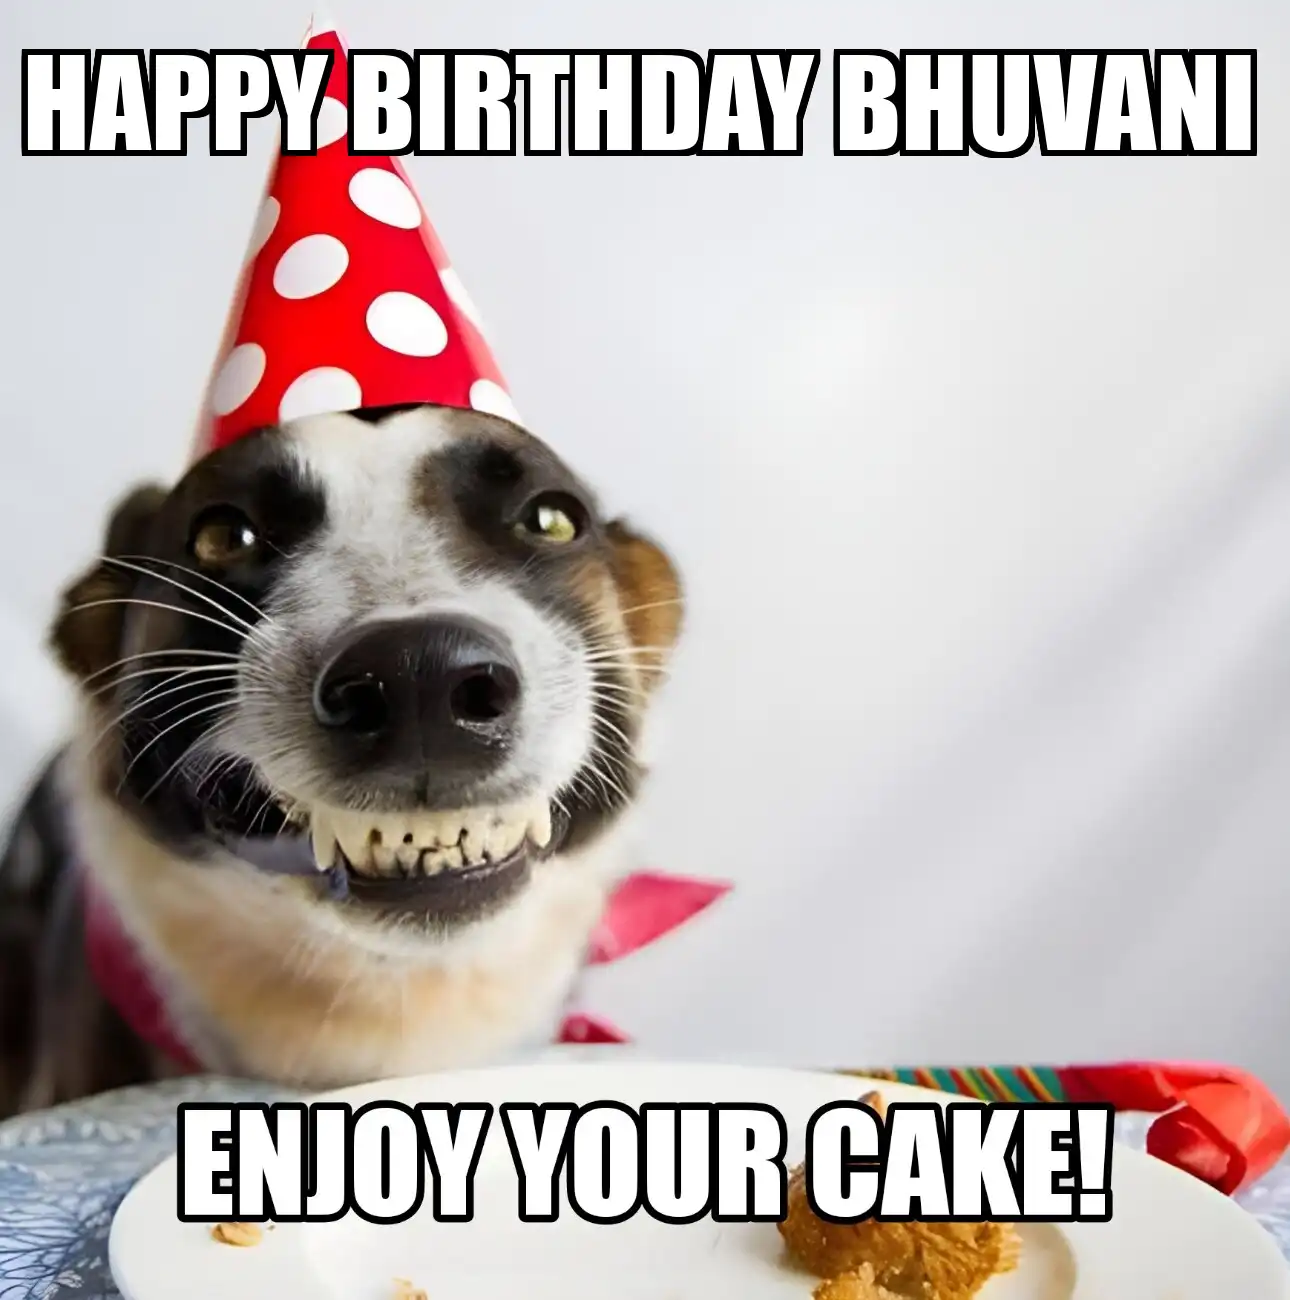 Happy Birthday Bhuvani Enjoy Your Cake Dog Meme